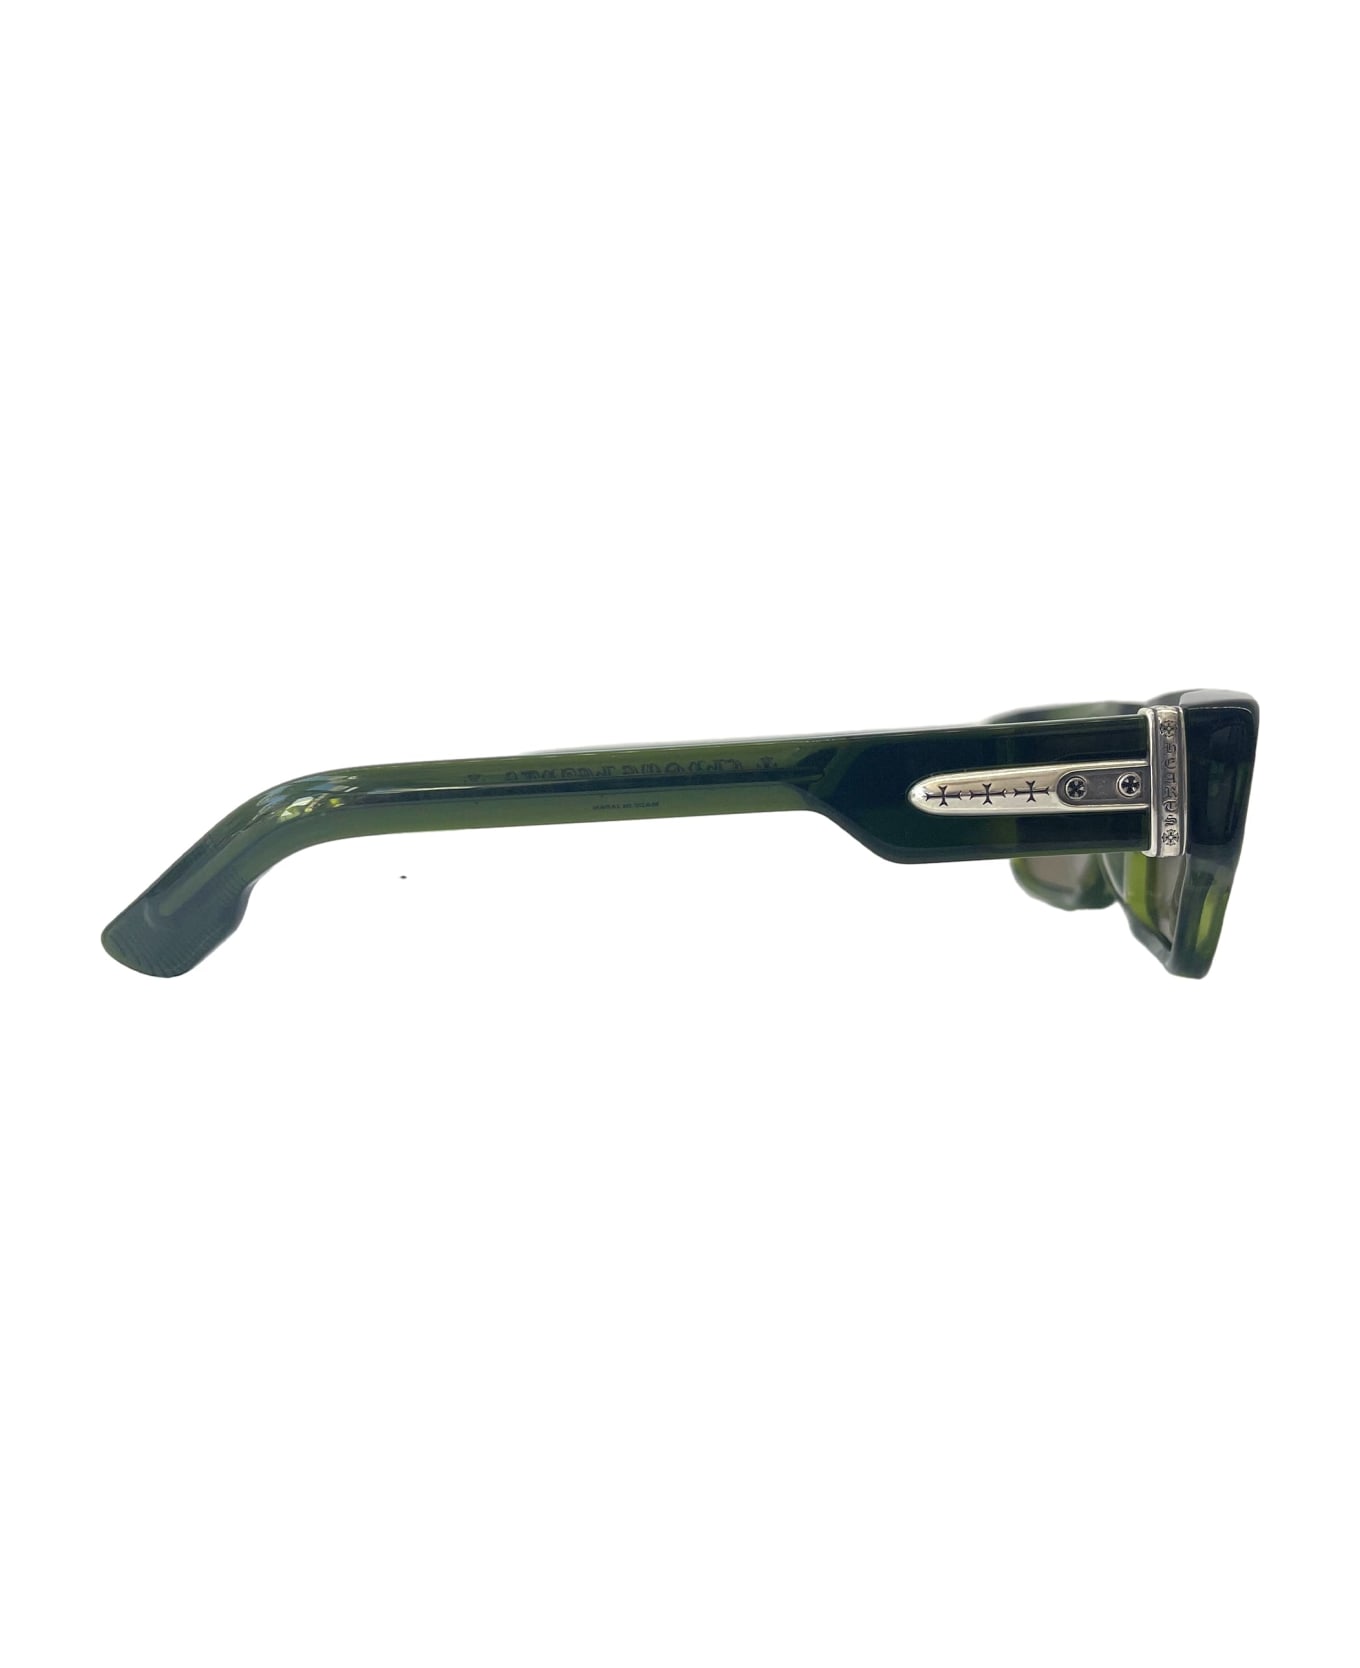 Chrome Hearts Girth Quake - Dark Olive Sunglasses - olive green